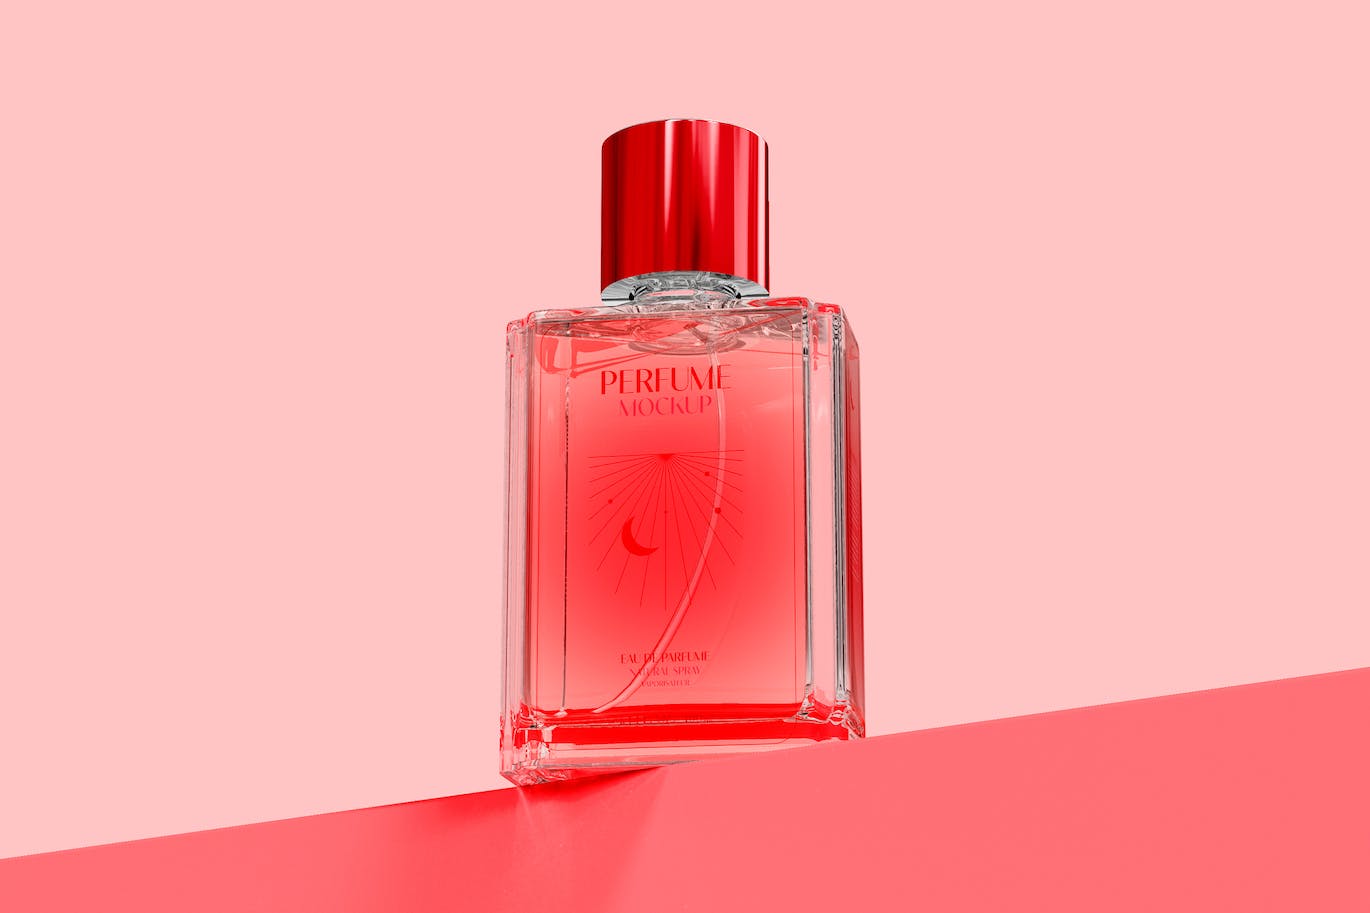 香水玻璃瓶品牌设计样机图 Perfume Bottle Mockup 样机素材 第1张